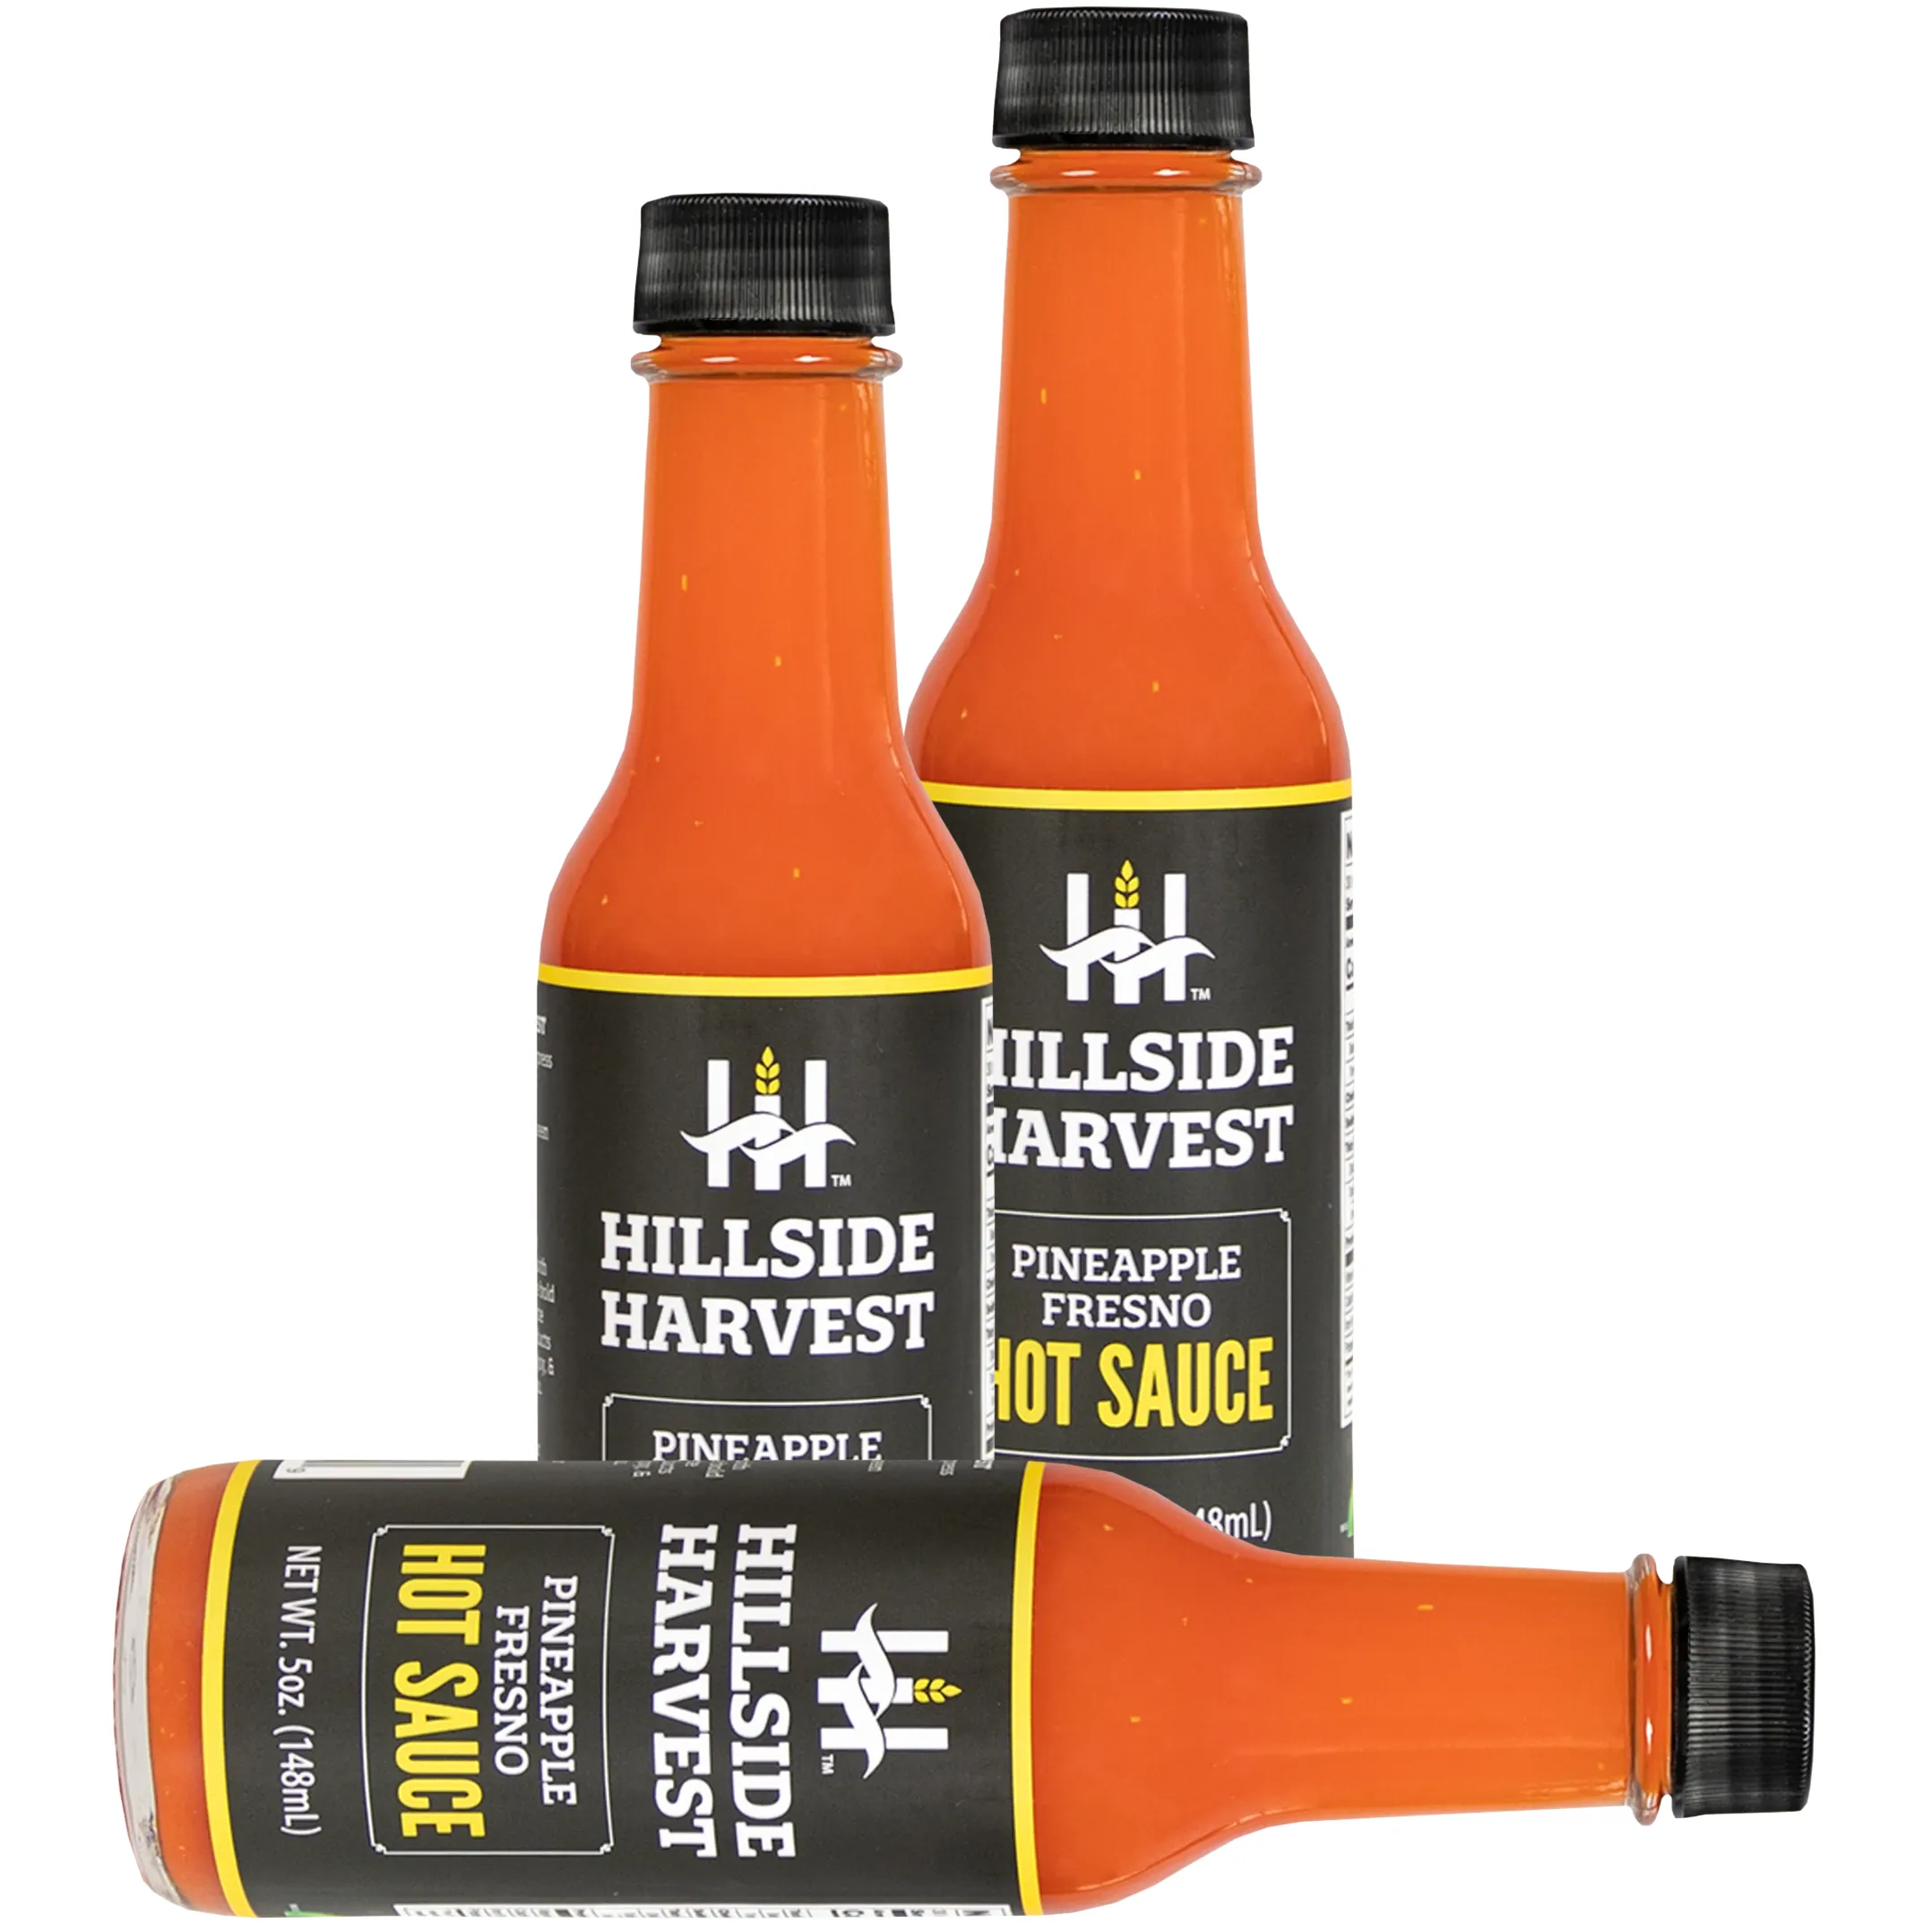 Free Hillside Harvest Pineapple Fresno Hot Sauce